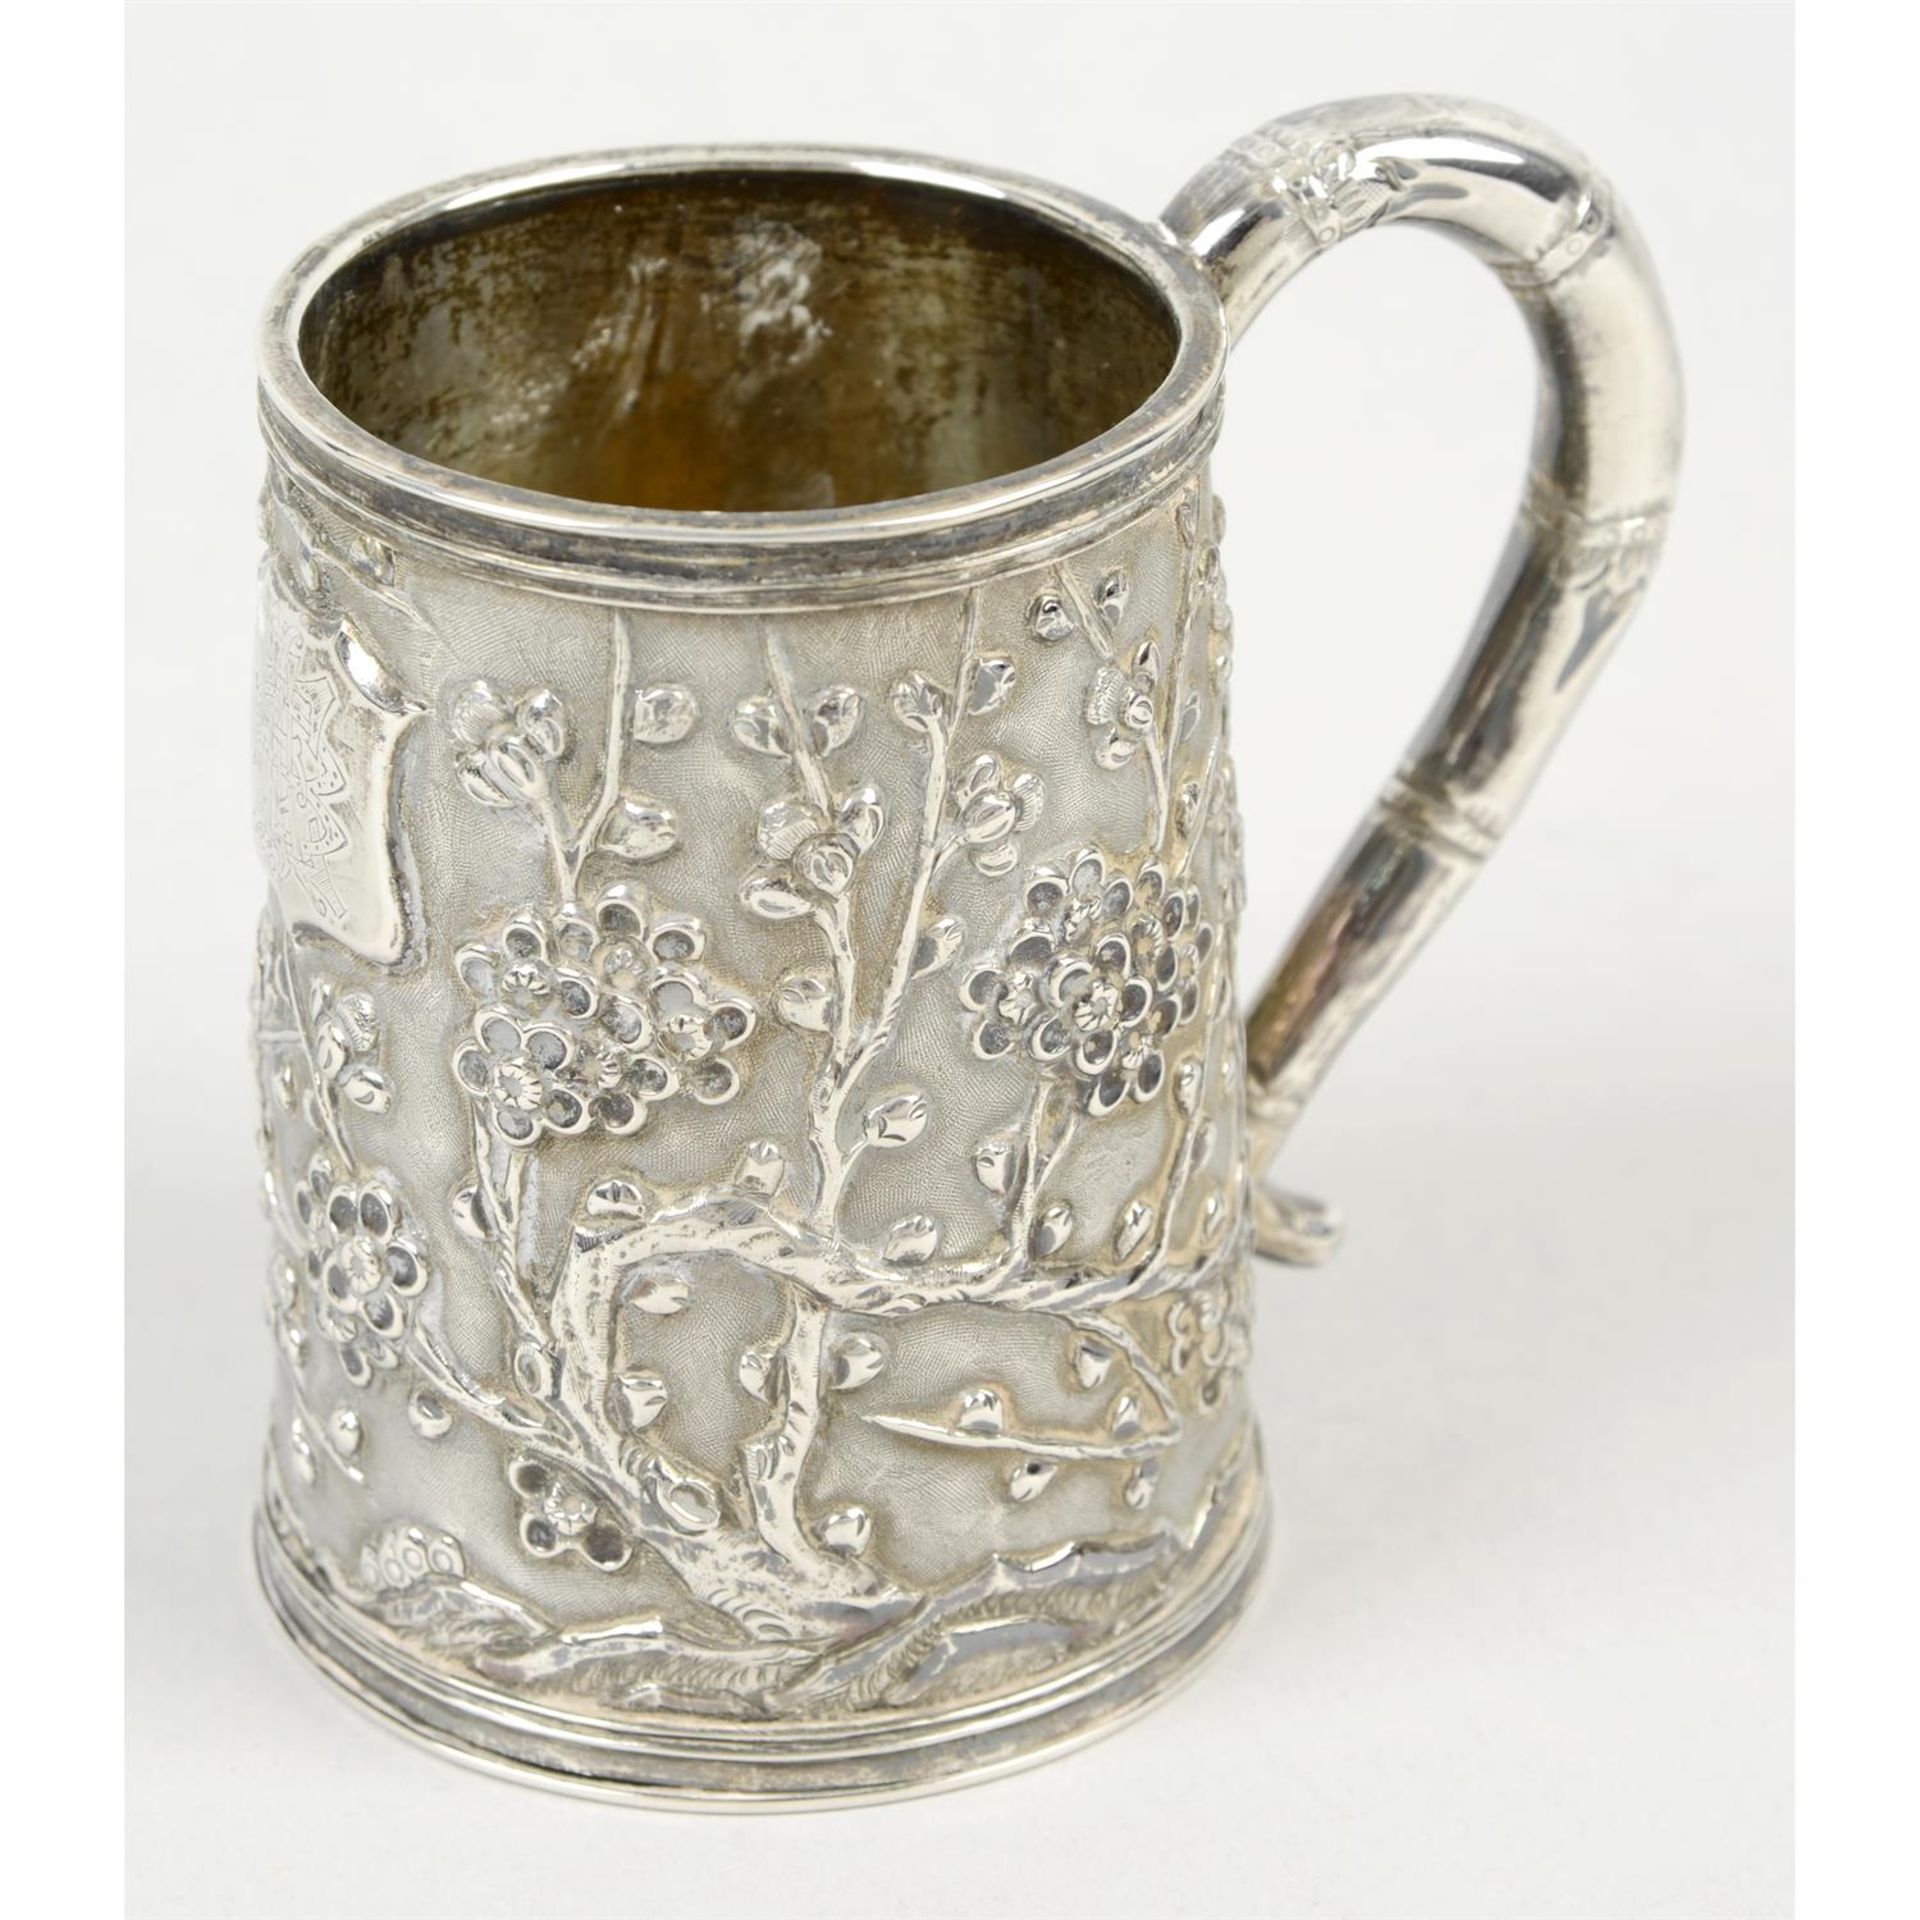 A Chinese export silver small mug.